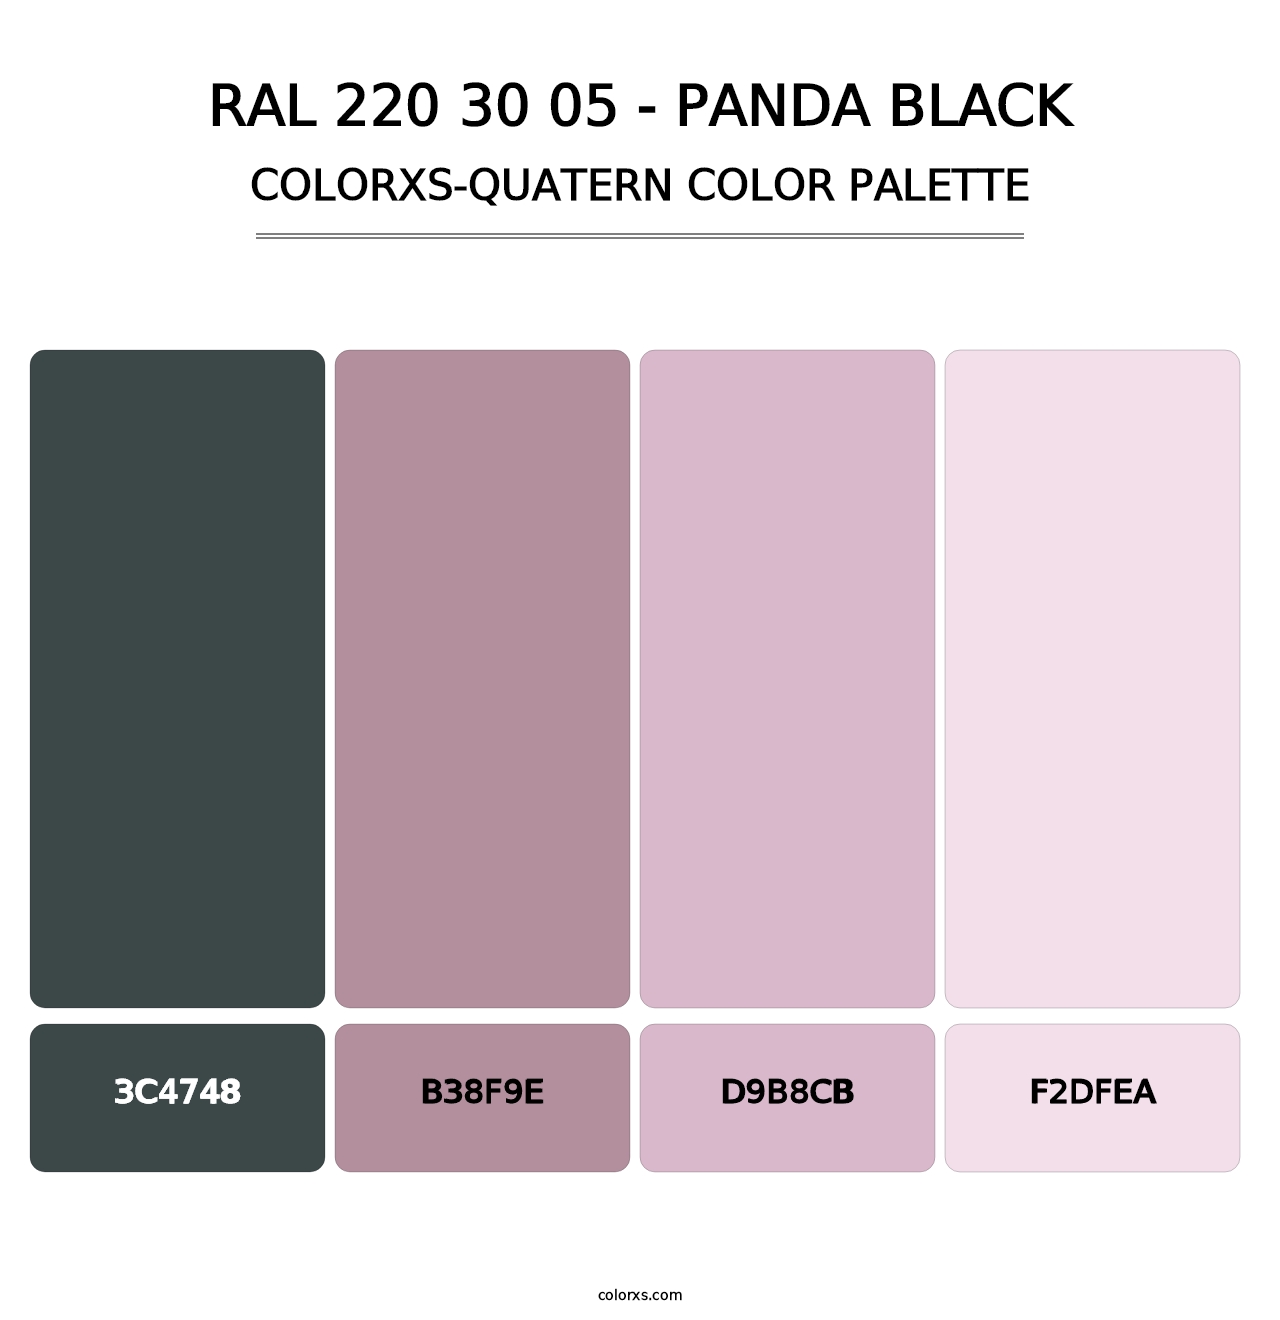 RAL 220 30 05 - Panda Black - Colorxs Quatern Palette